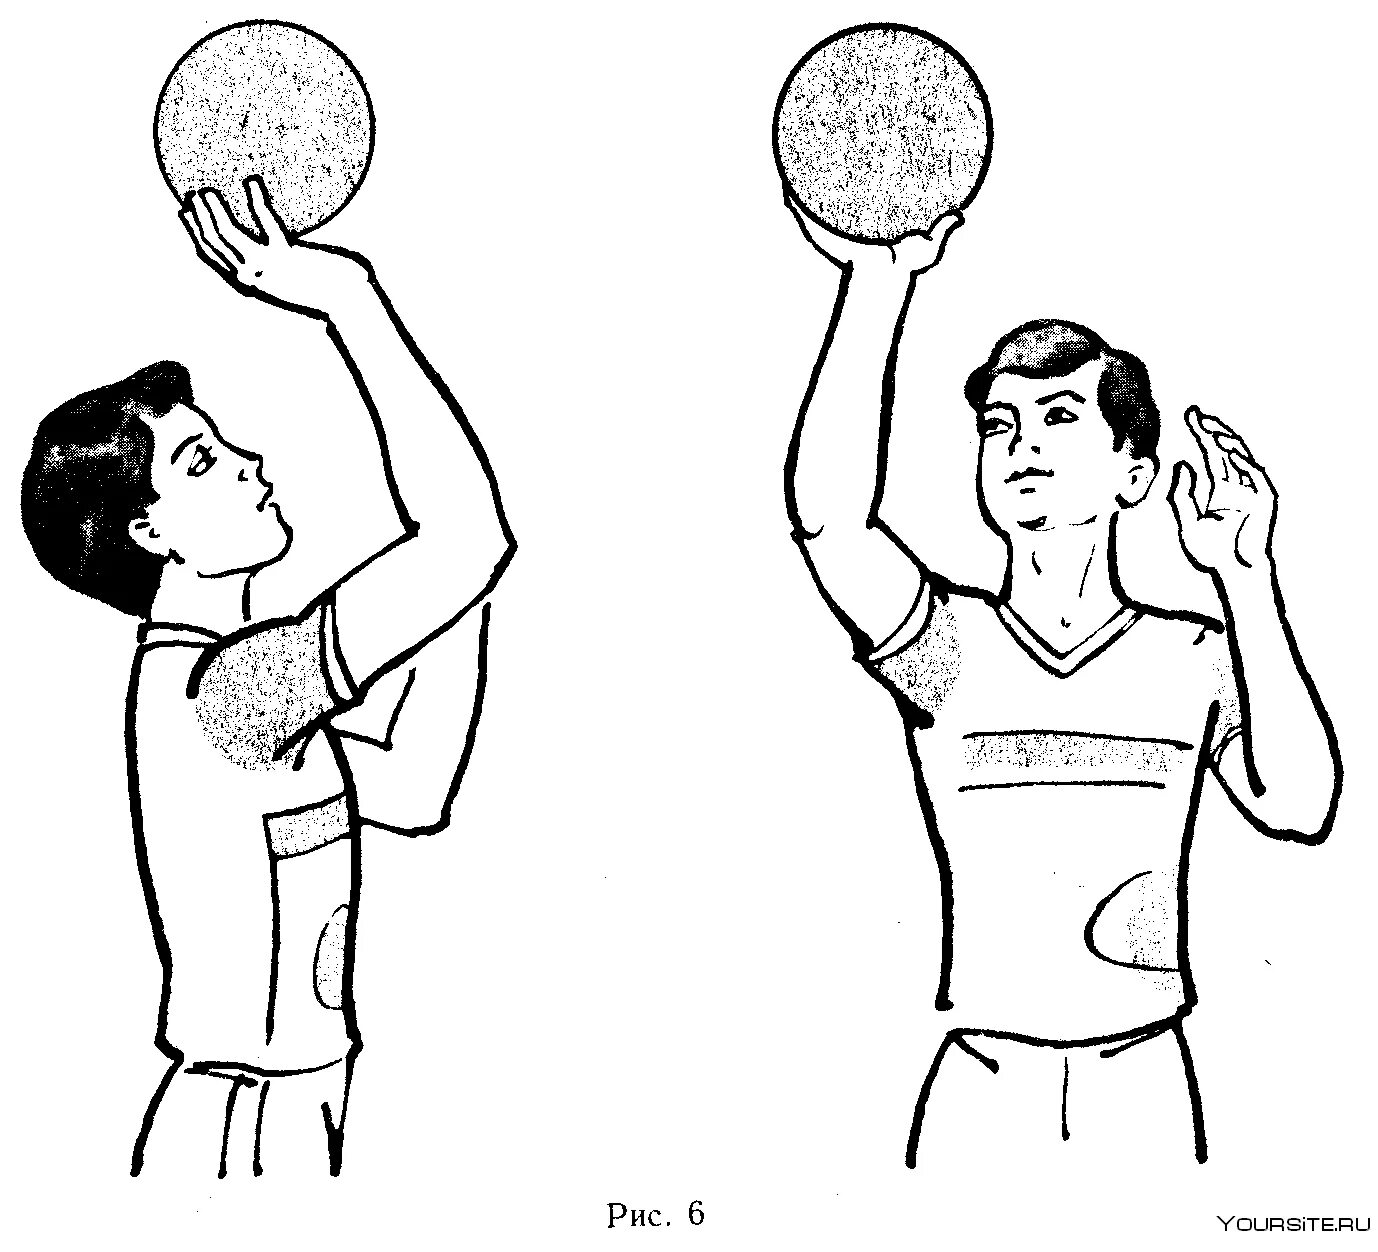 Верхняя передача это технический элемент который. Прием снизу двумя руками в волейболе. Прием мяча снизу двумя руками в волейболе. Техника передач мяча в парах сверху и снизу. Волейбол. Передача снизу в волейболе.